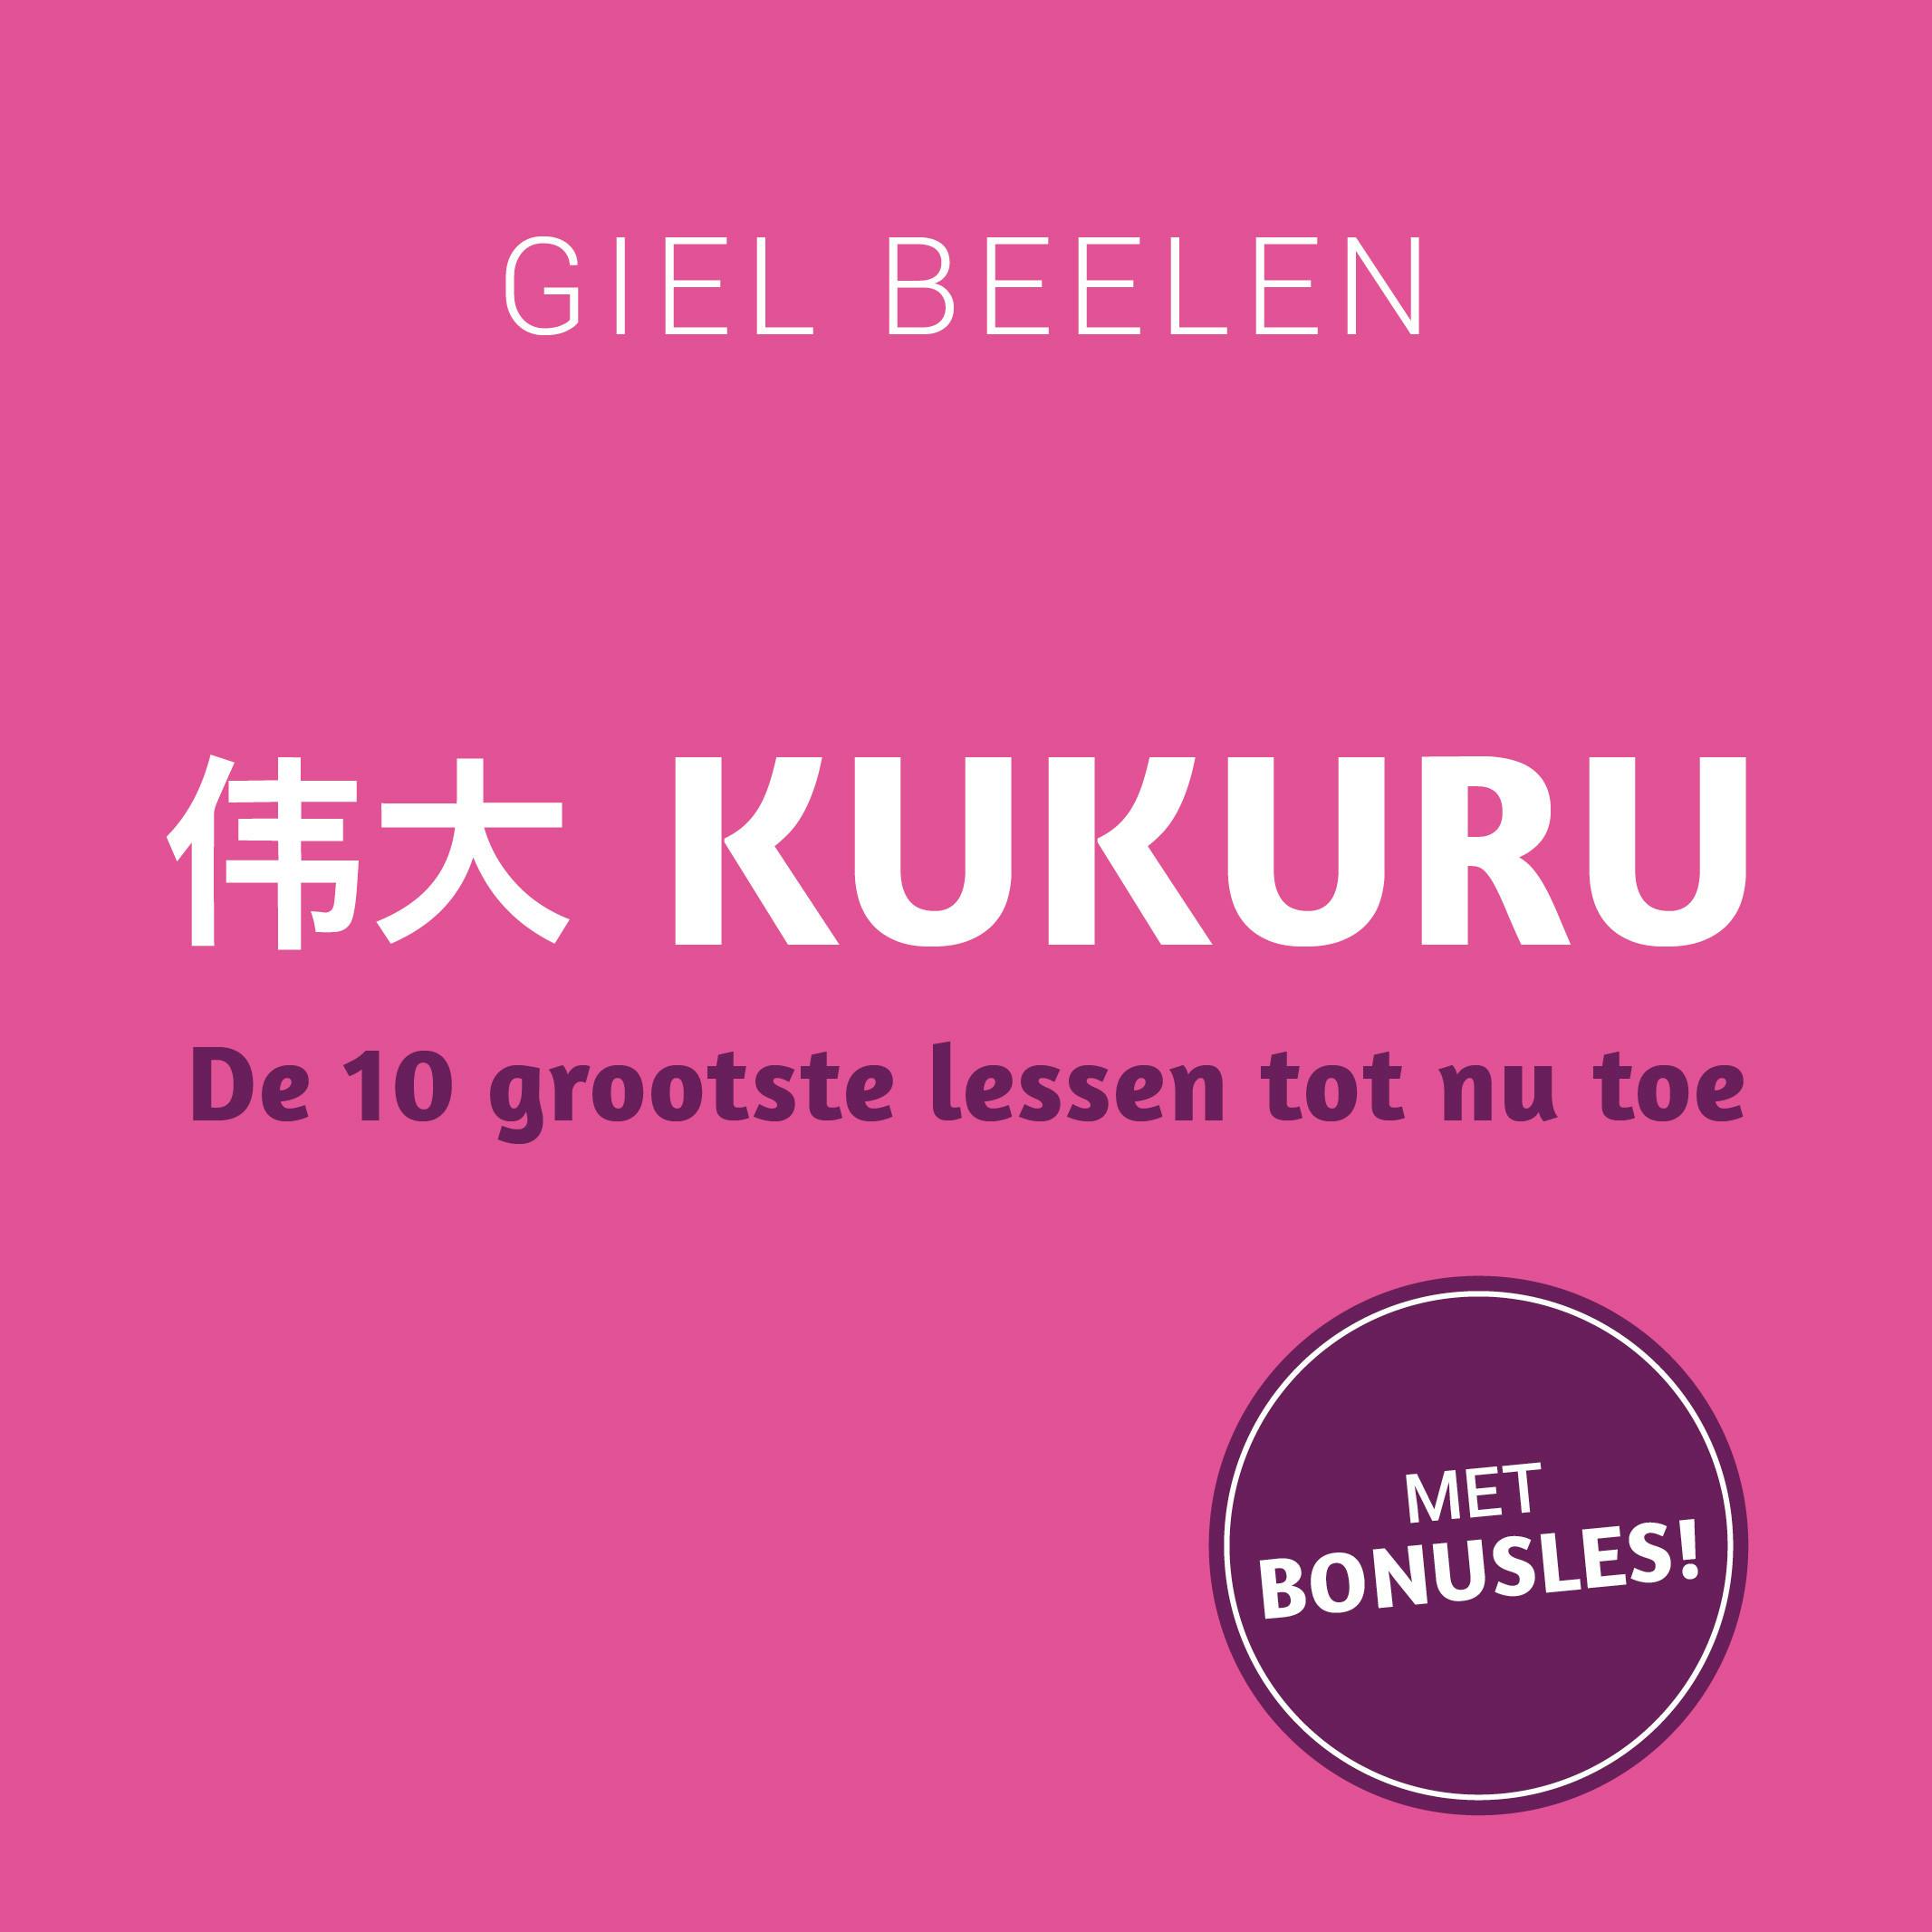 Kukuru: De 10 grootste lessen tot nu toe - Giel Beelen